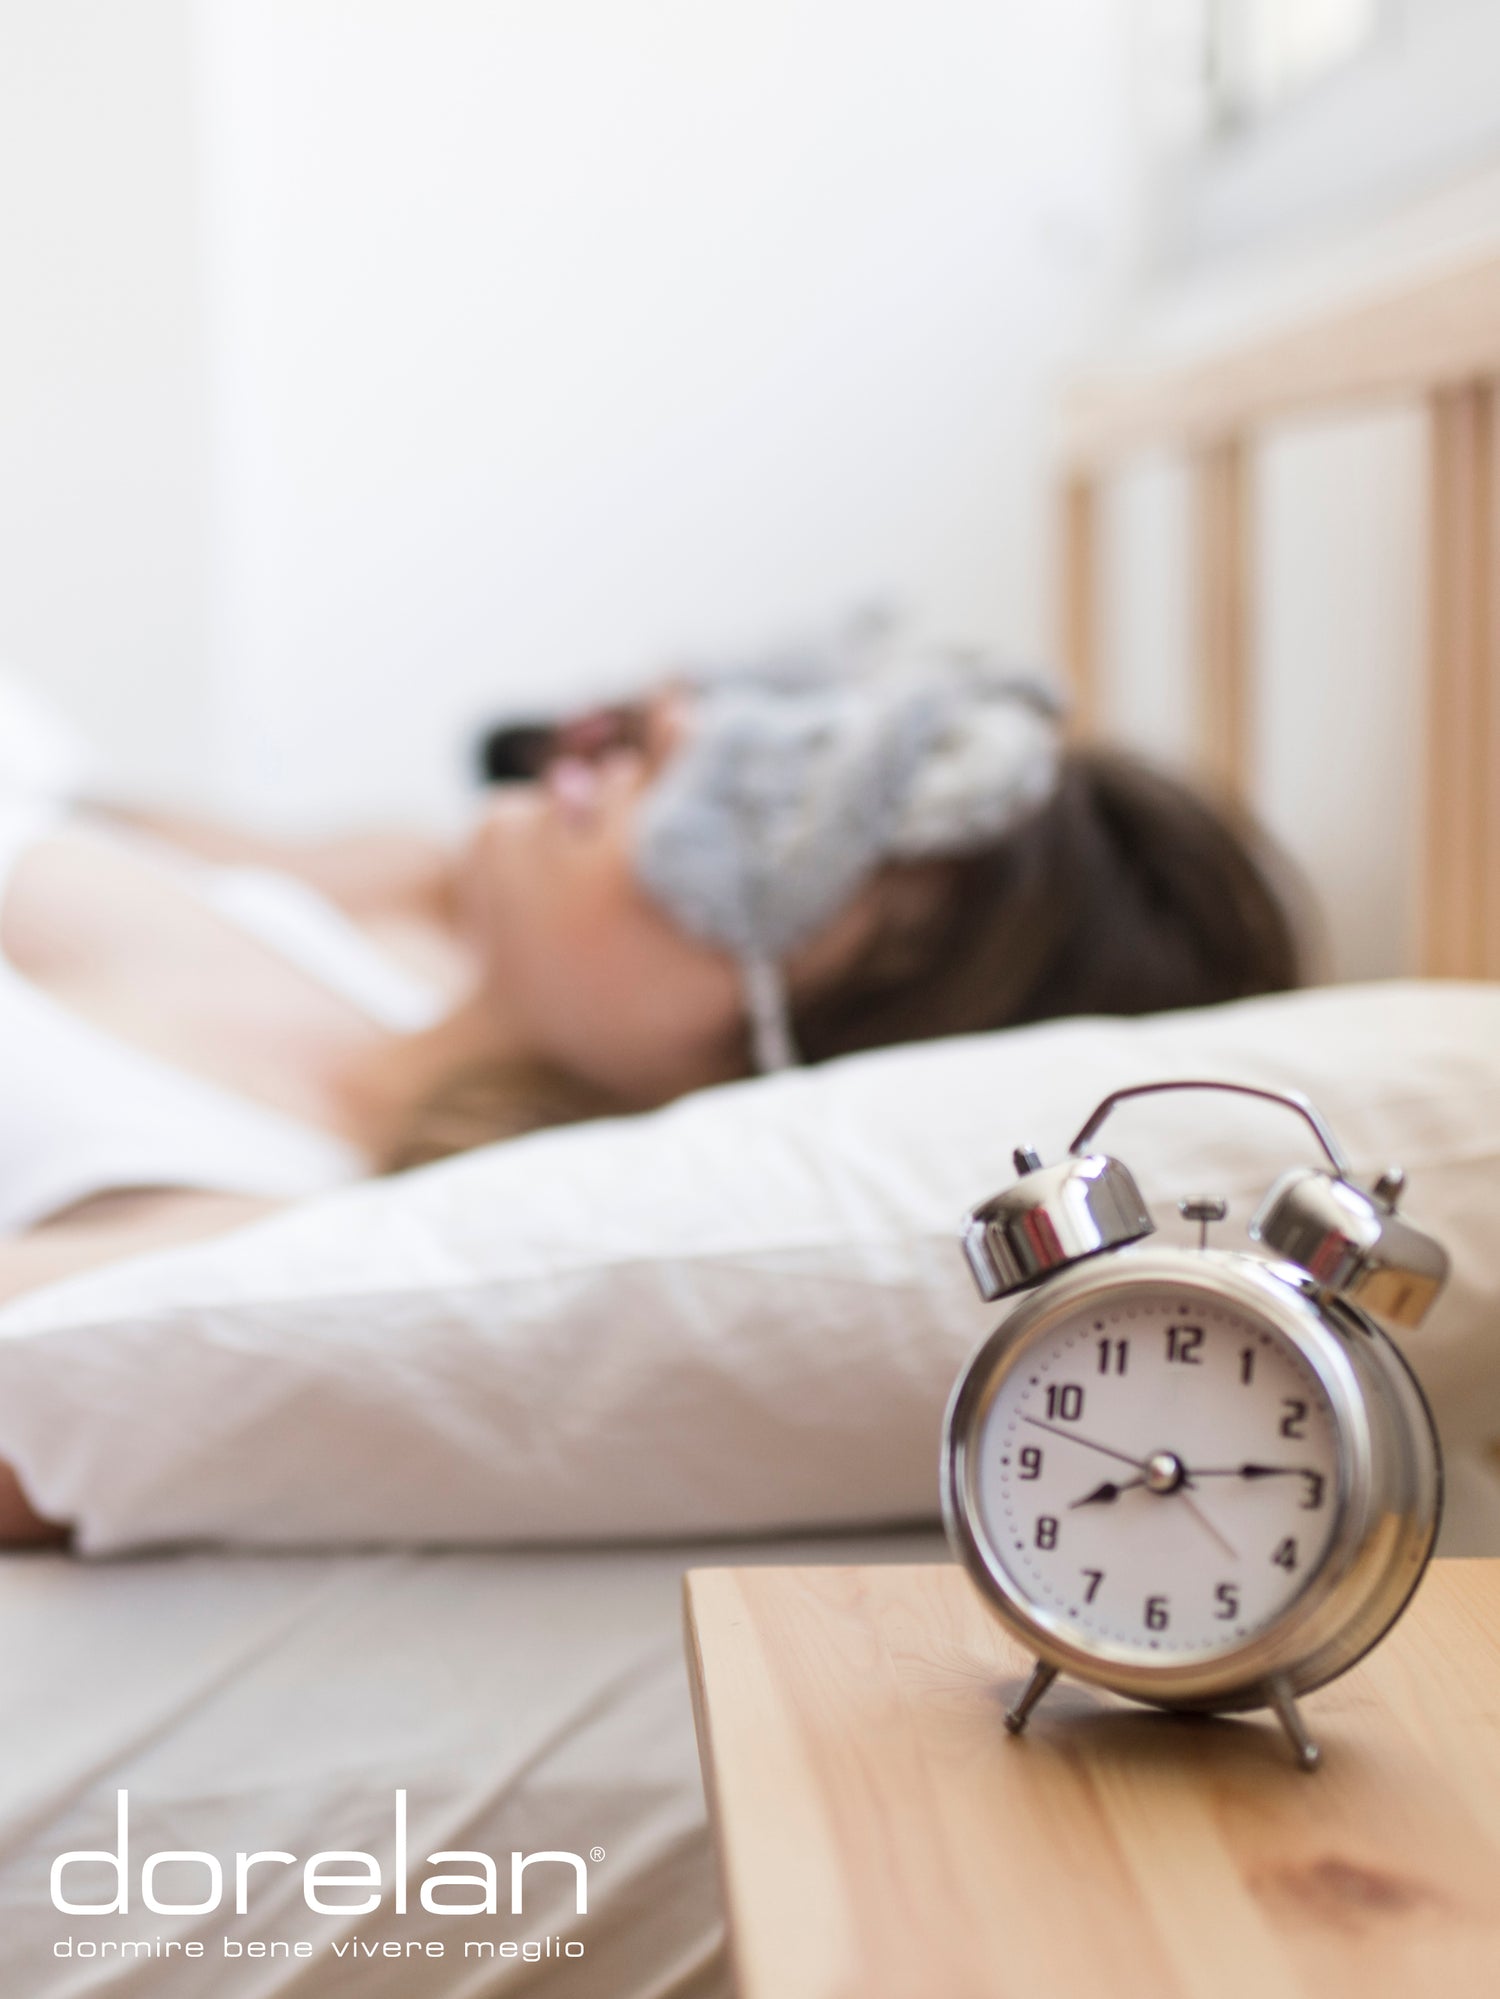 Quante ore dormi? Ecco come valutare il tuo fabbisogno di sonno